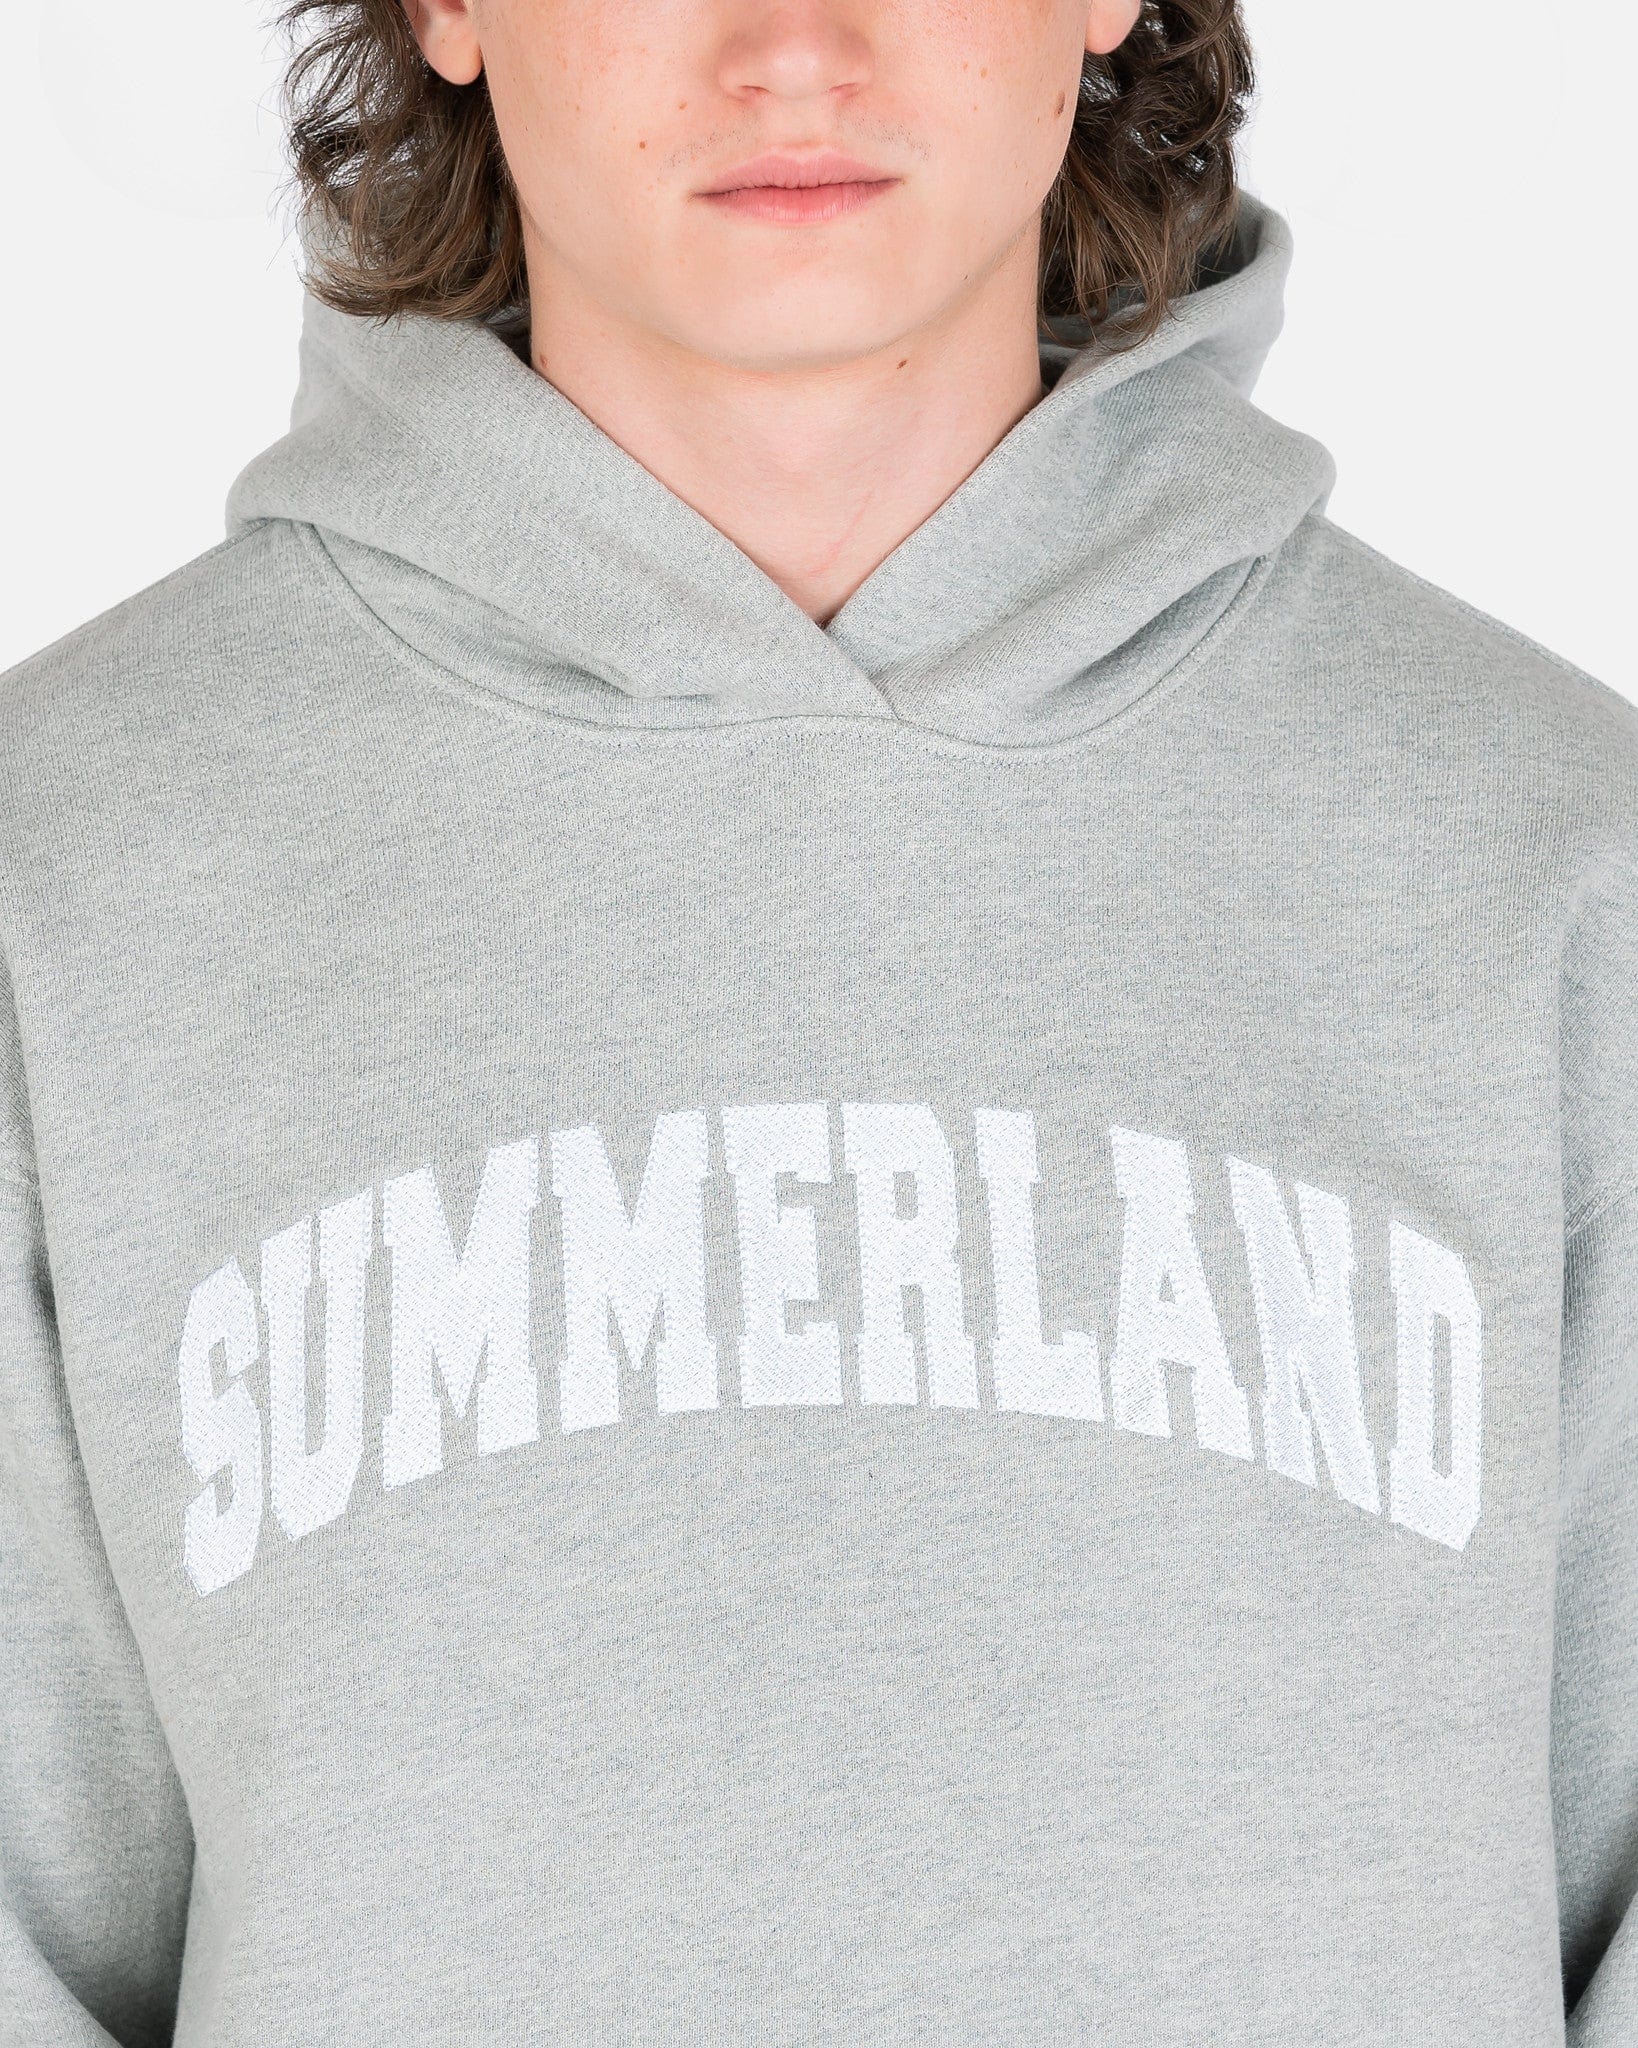 NAHMIAS Men's Sweatshirts Summerland Embroidered Hoodie in Grey